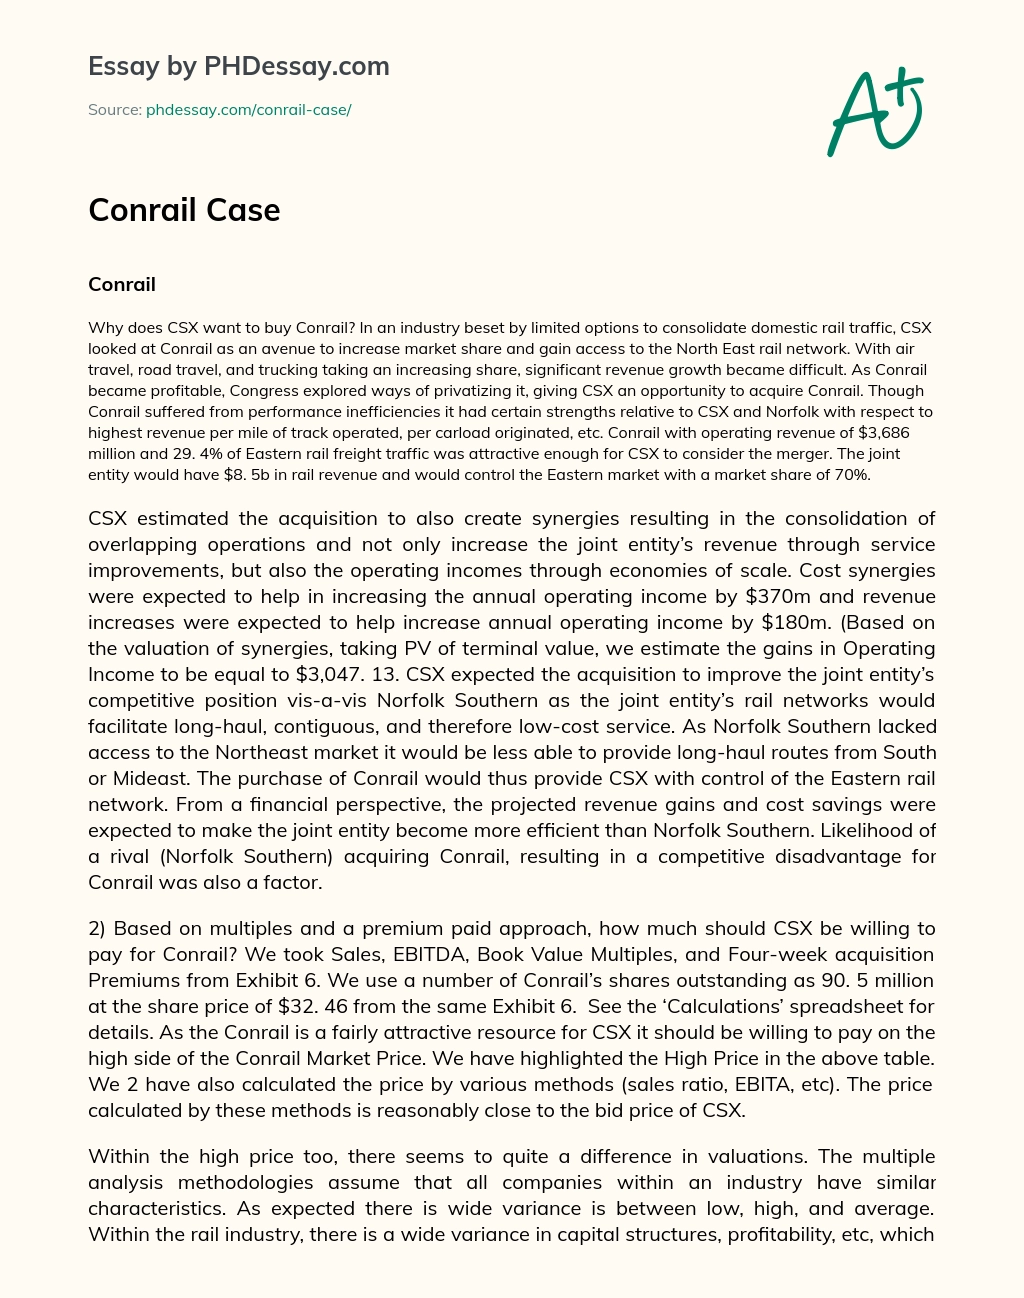 Conrail Case essay